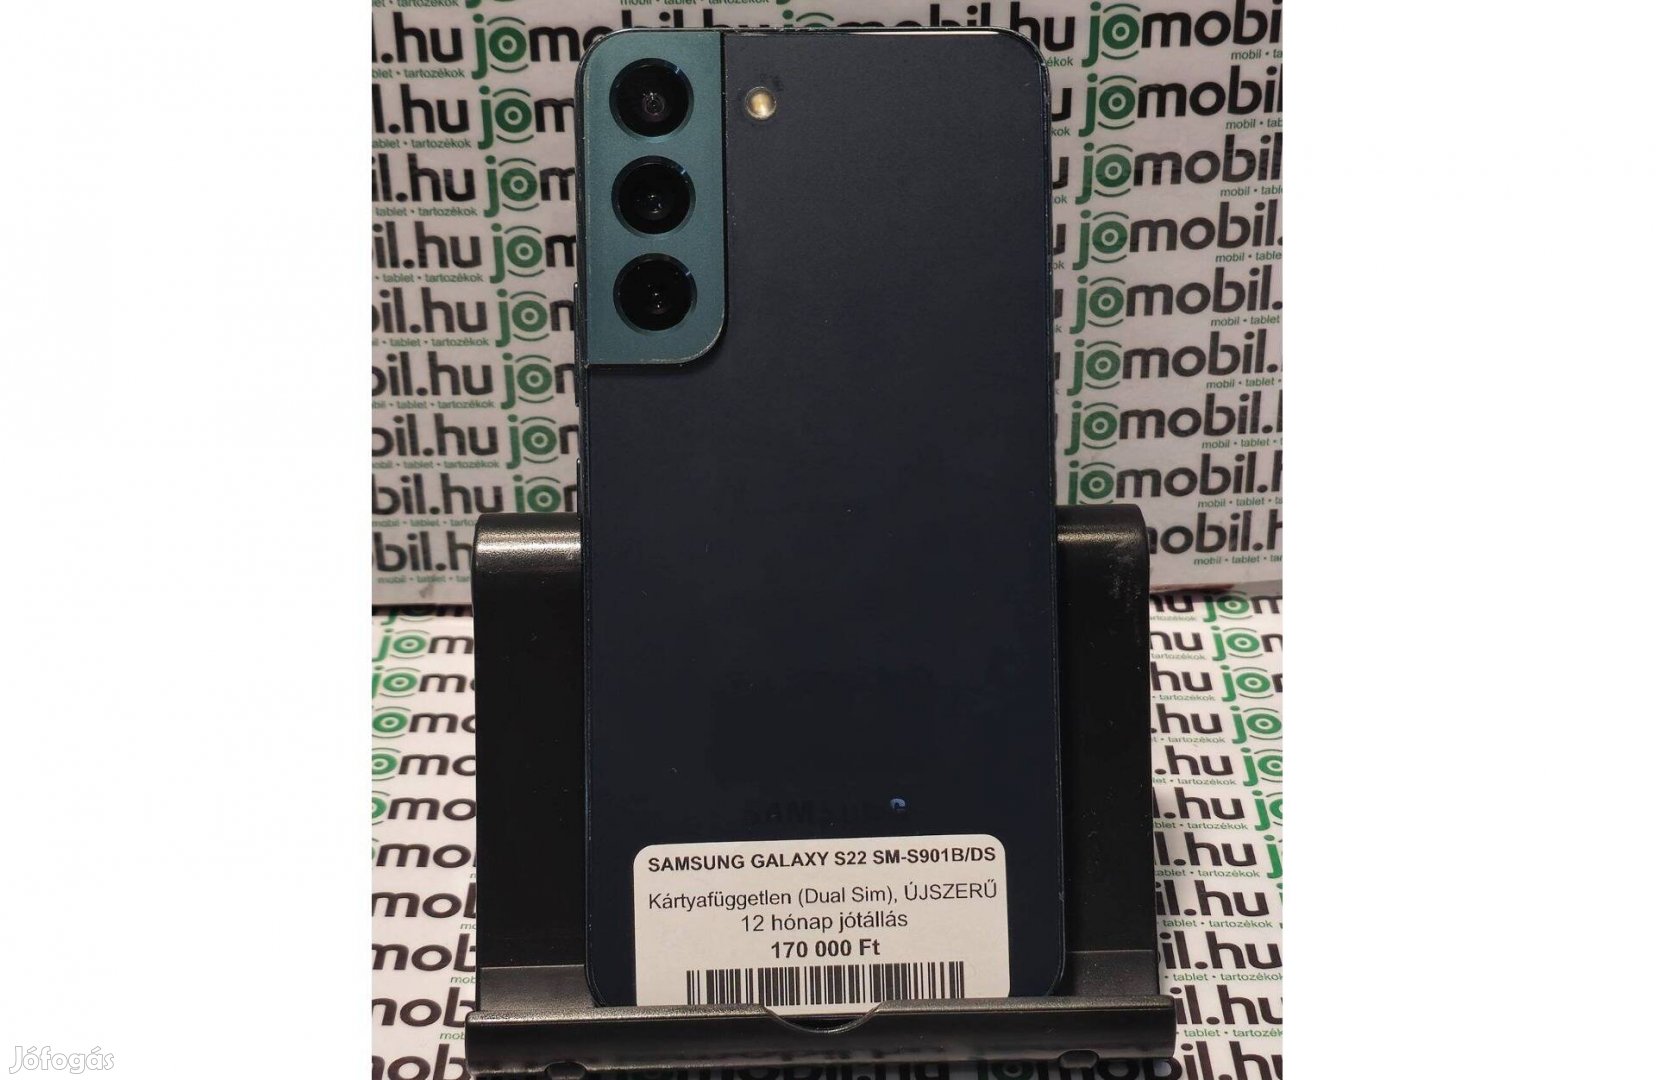 Újszeszű Samsung S22 5G 128GB sötét zöld színű dual simes mobiltelefon